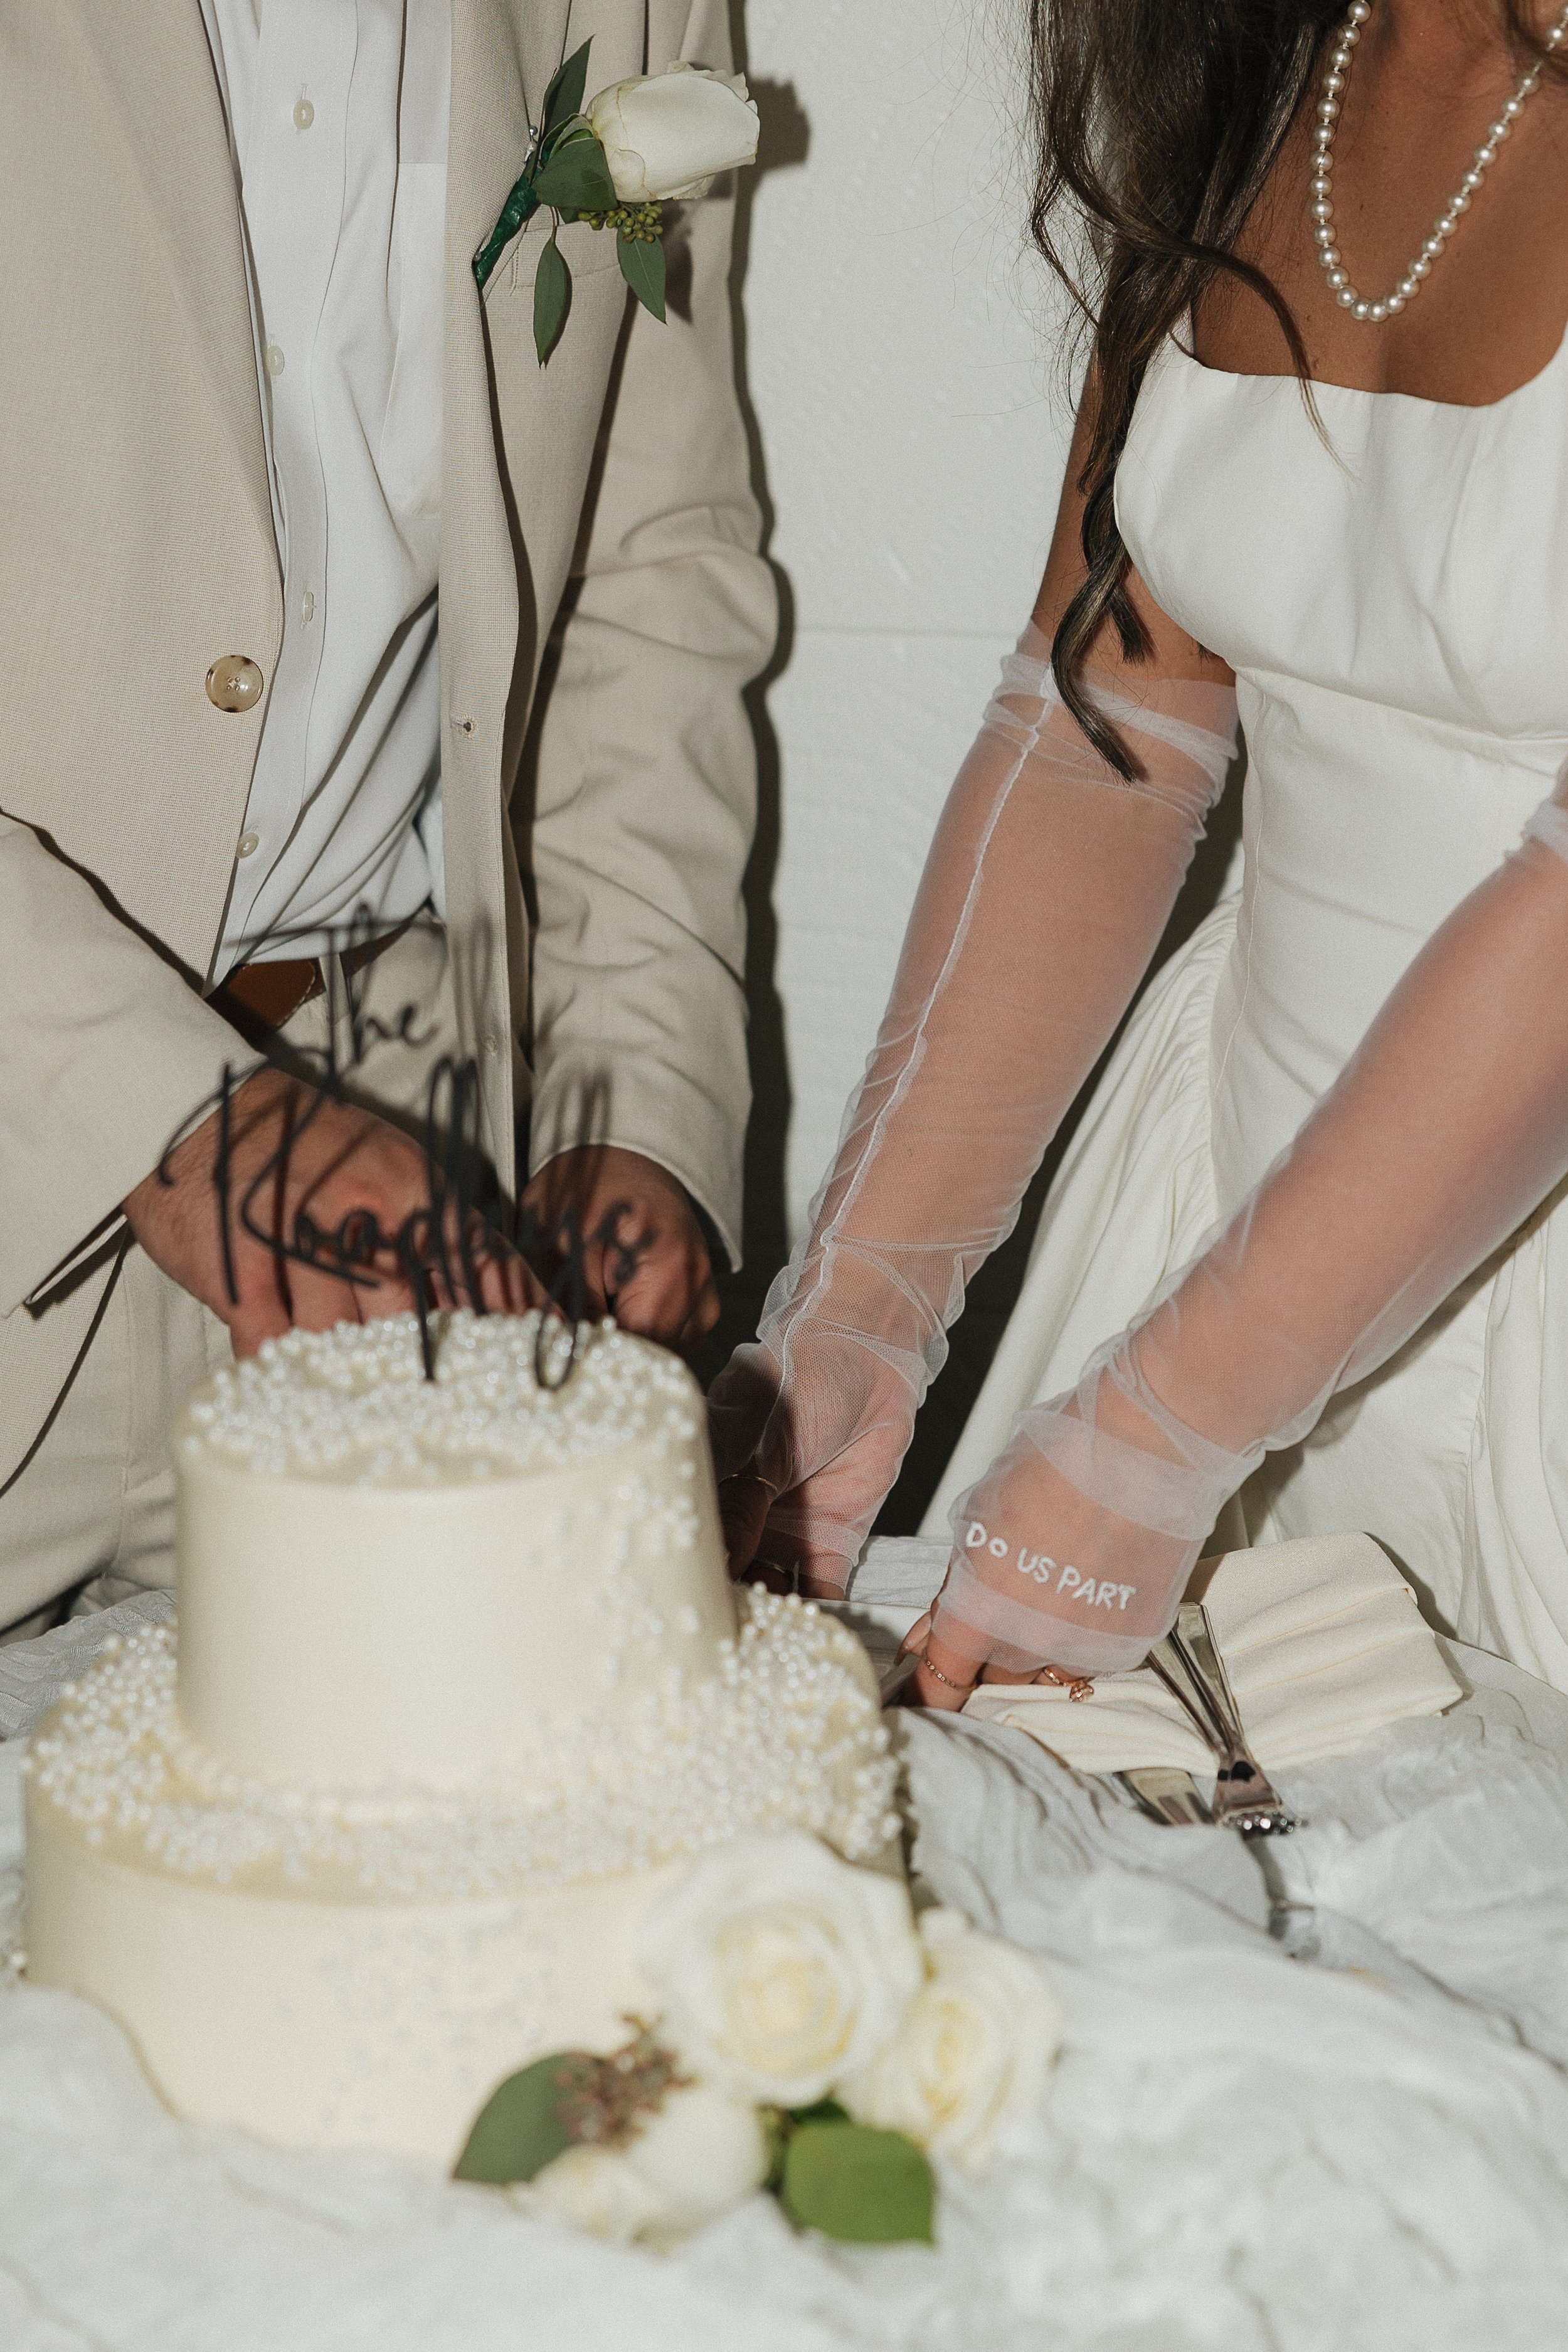 2 CASA MARINA RESORT KEY WEST - KEY WEST WEDDING PLANNER - LUXURY WEDDING - WEDDING DESIGN - FLORIDA KEYS WEDDING - THE REACH RESORT.jpg